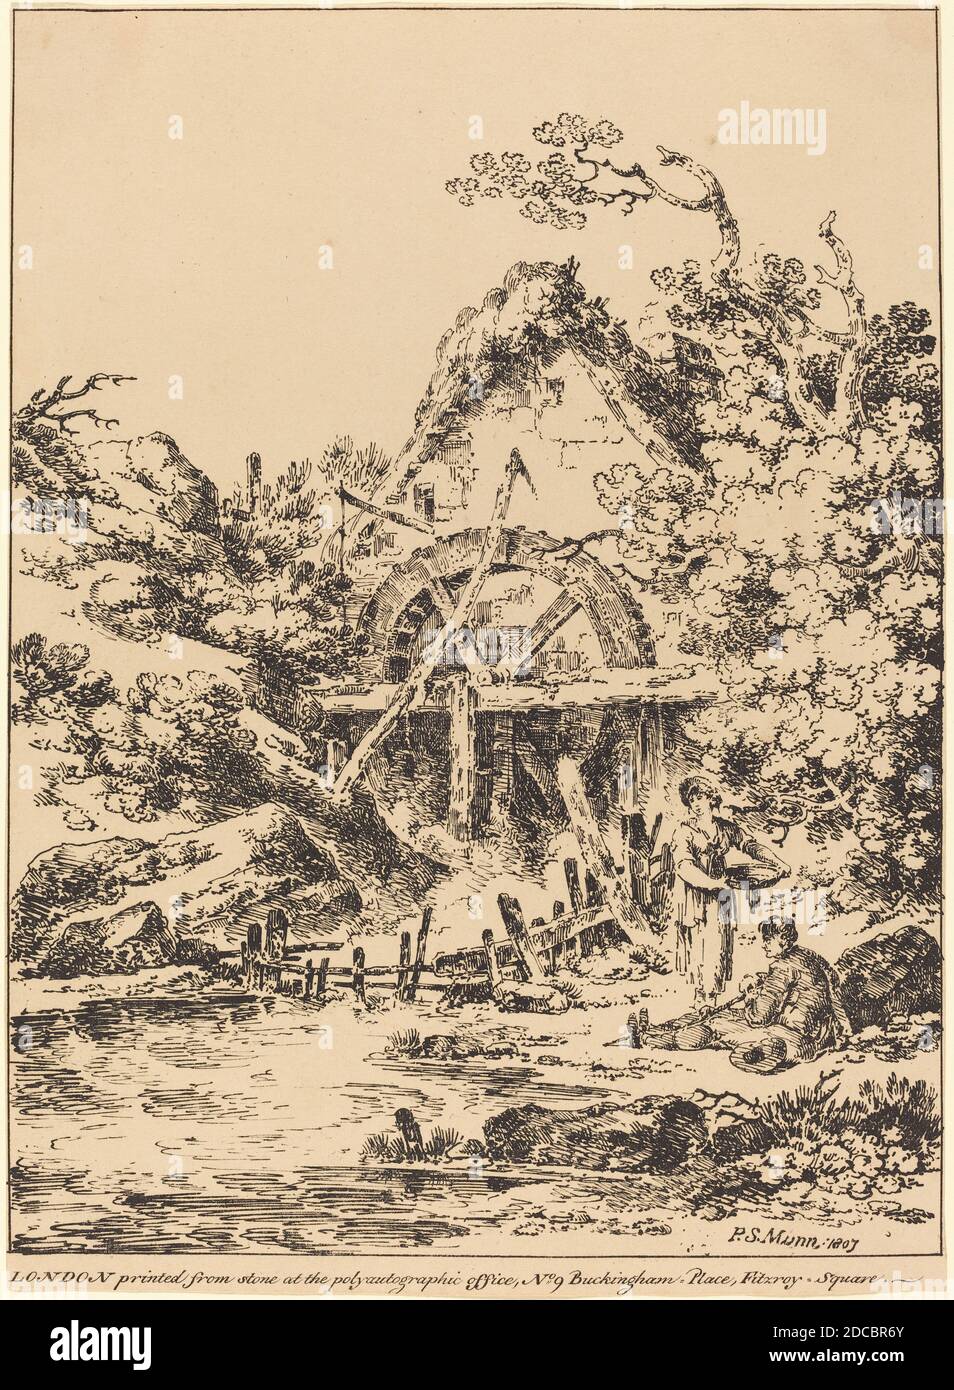 Paul Sandby Munn, (artista), British, 1773 - 1845, Old Water Mill, esemplari di poliautografia, (serie), 1807, litografia a penna e a tusche Foto Stock